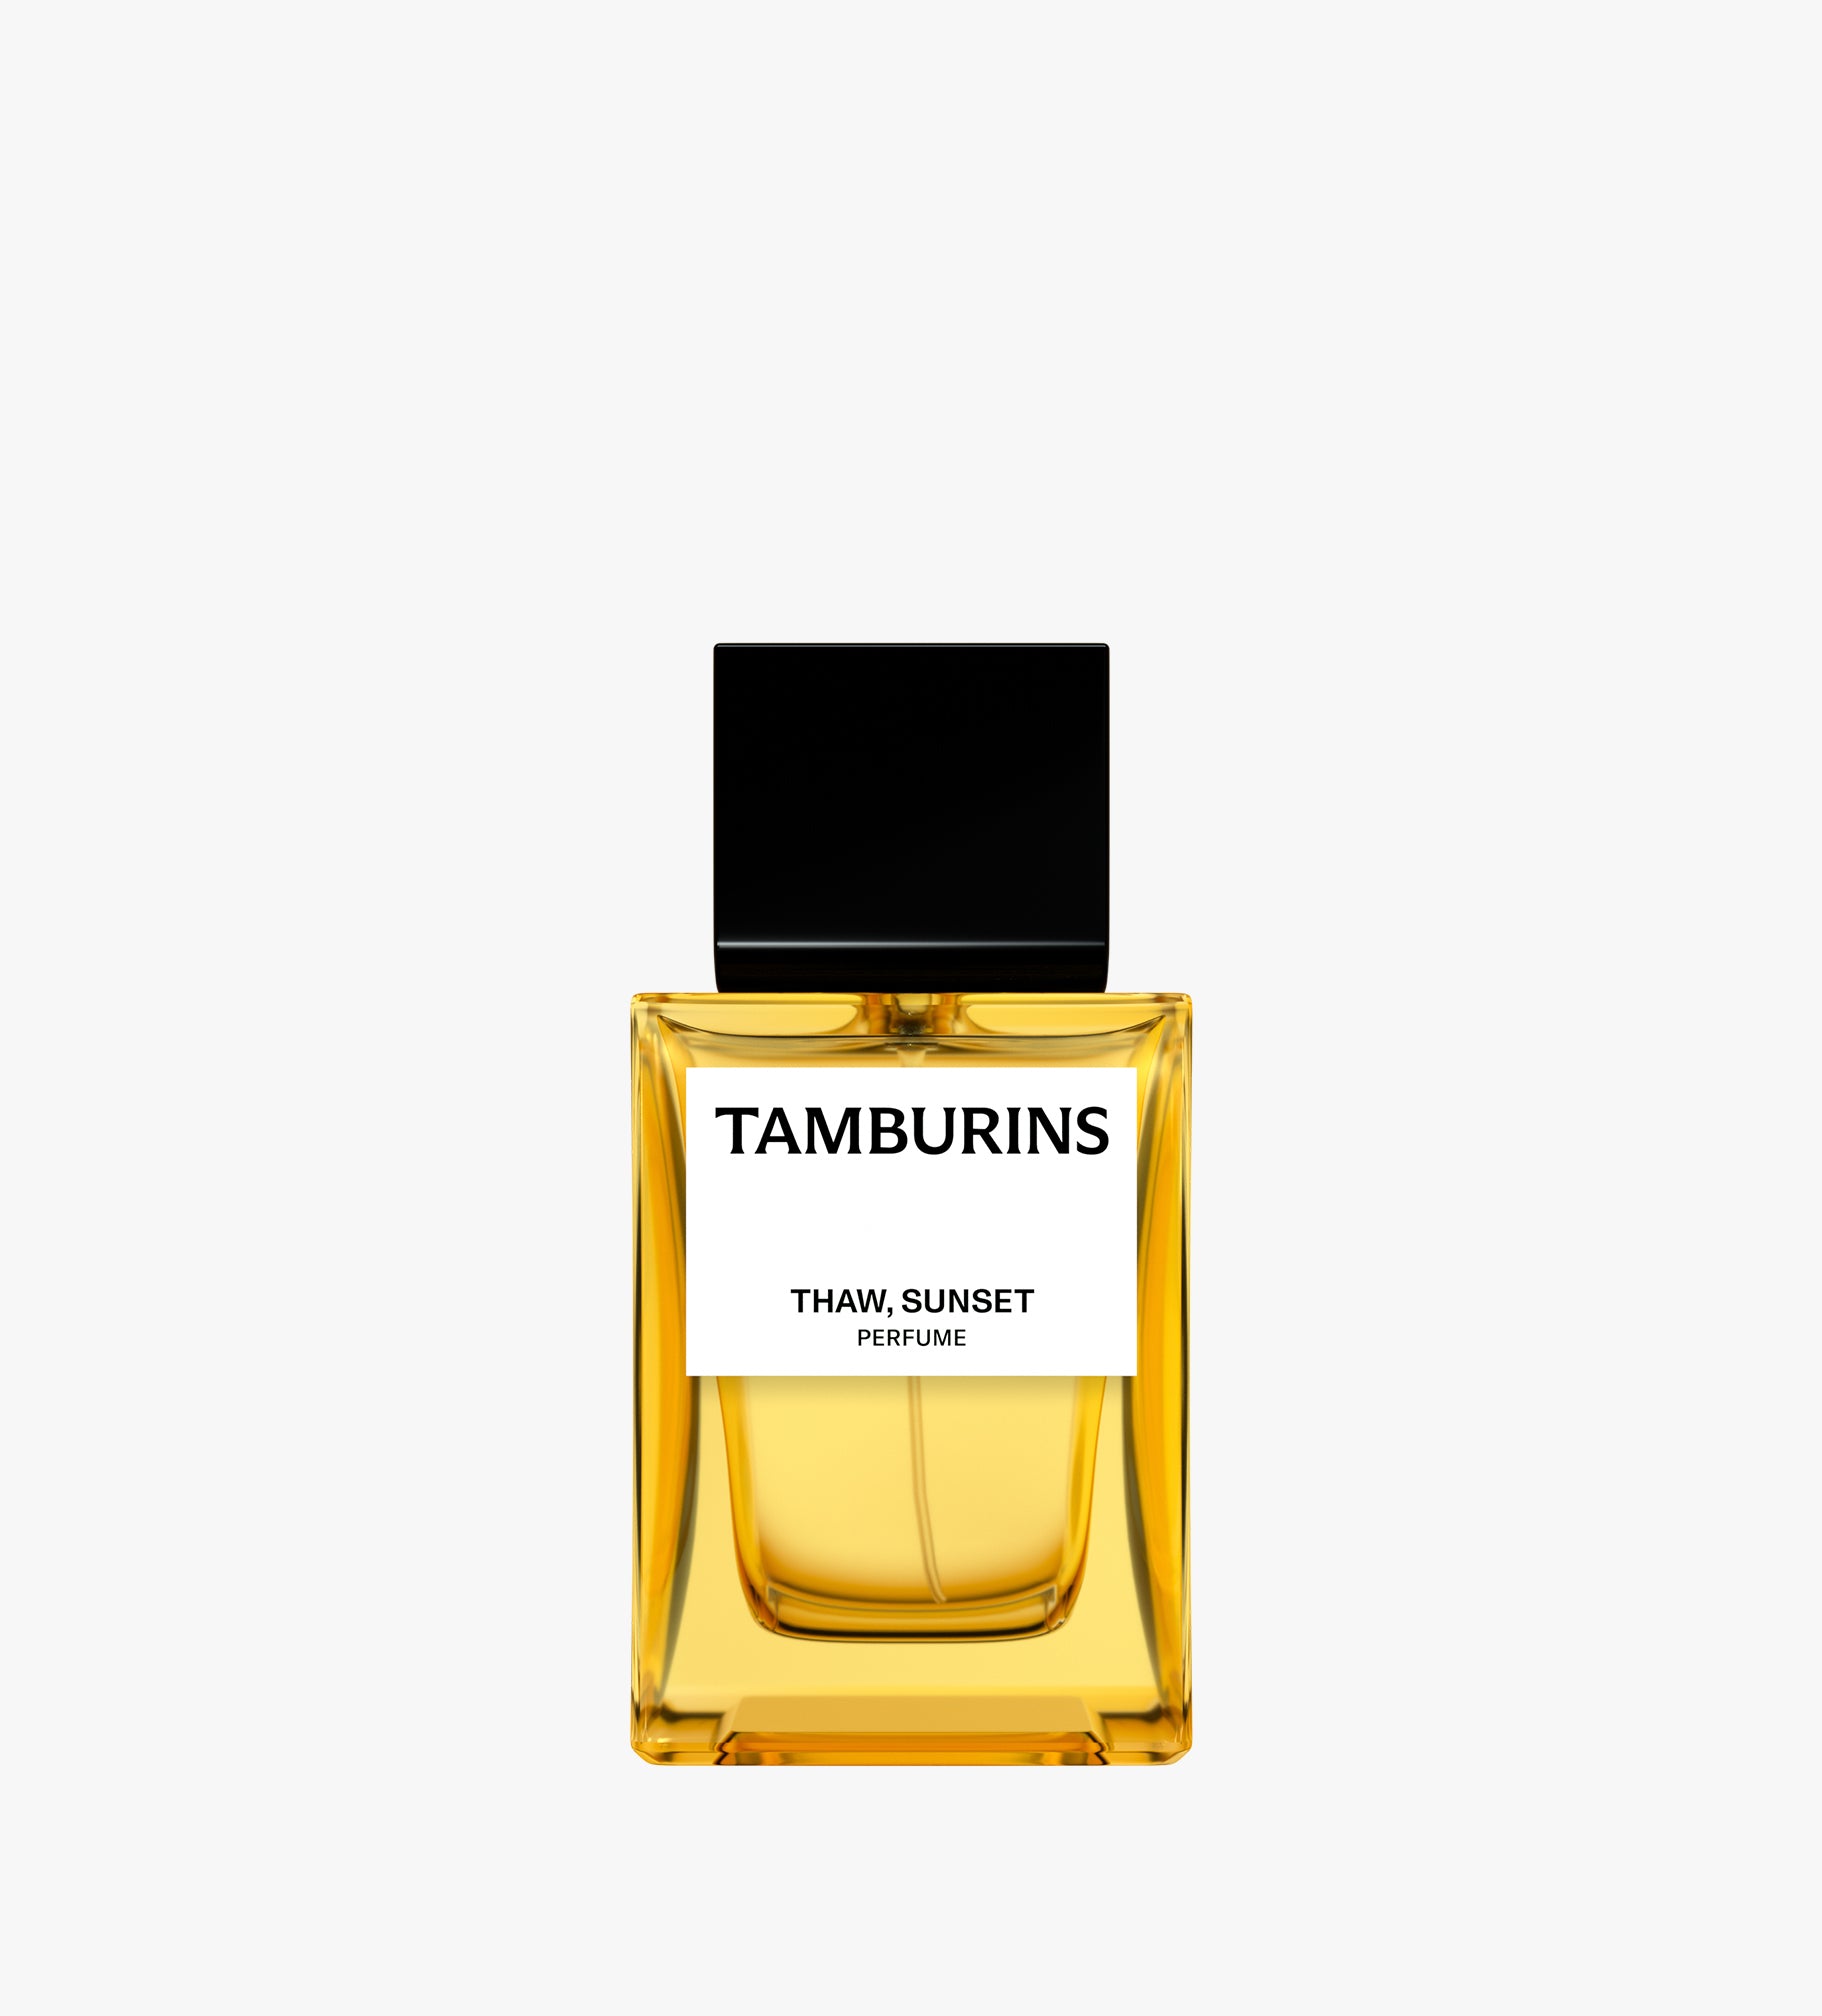 Tamburins Perfume - Thaw Sunset